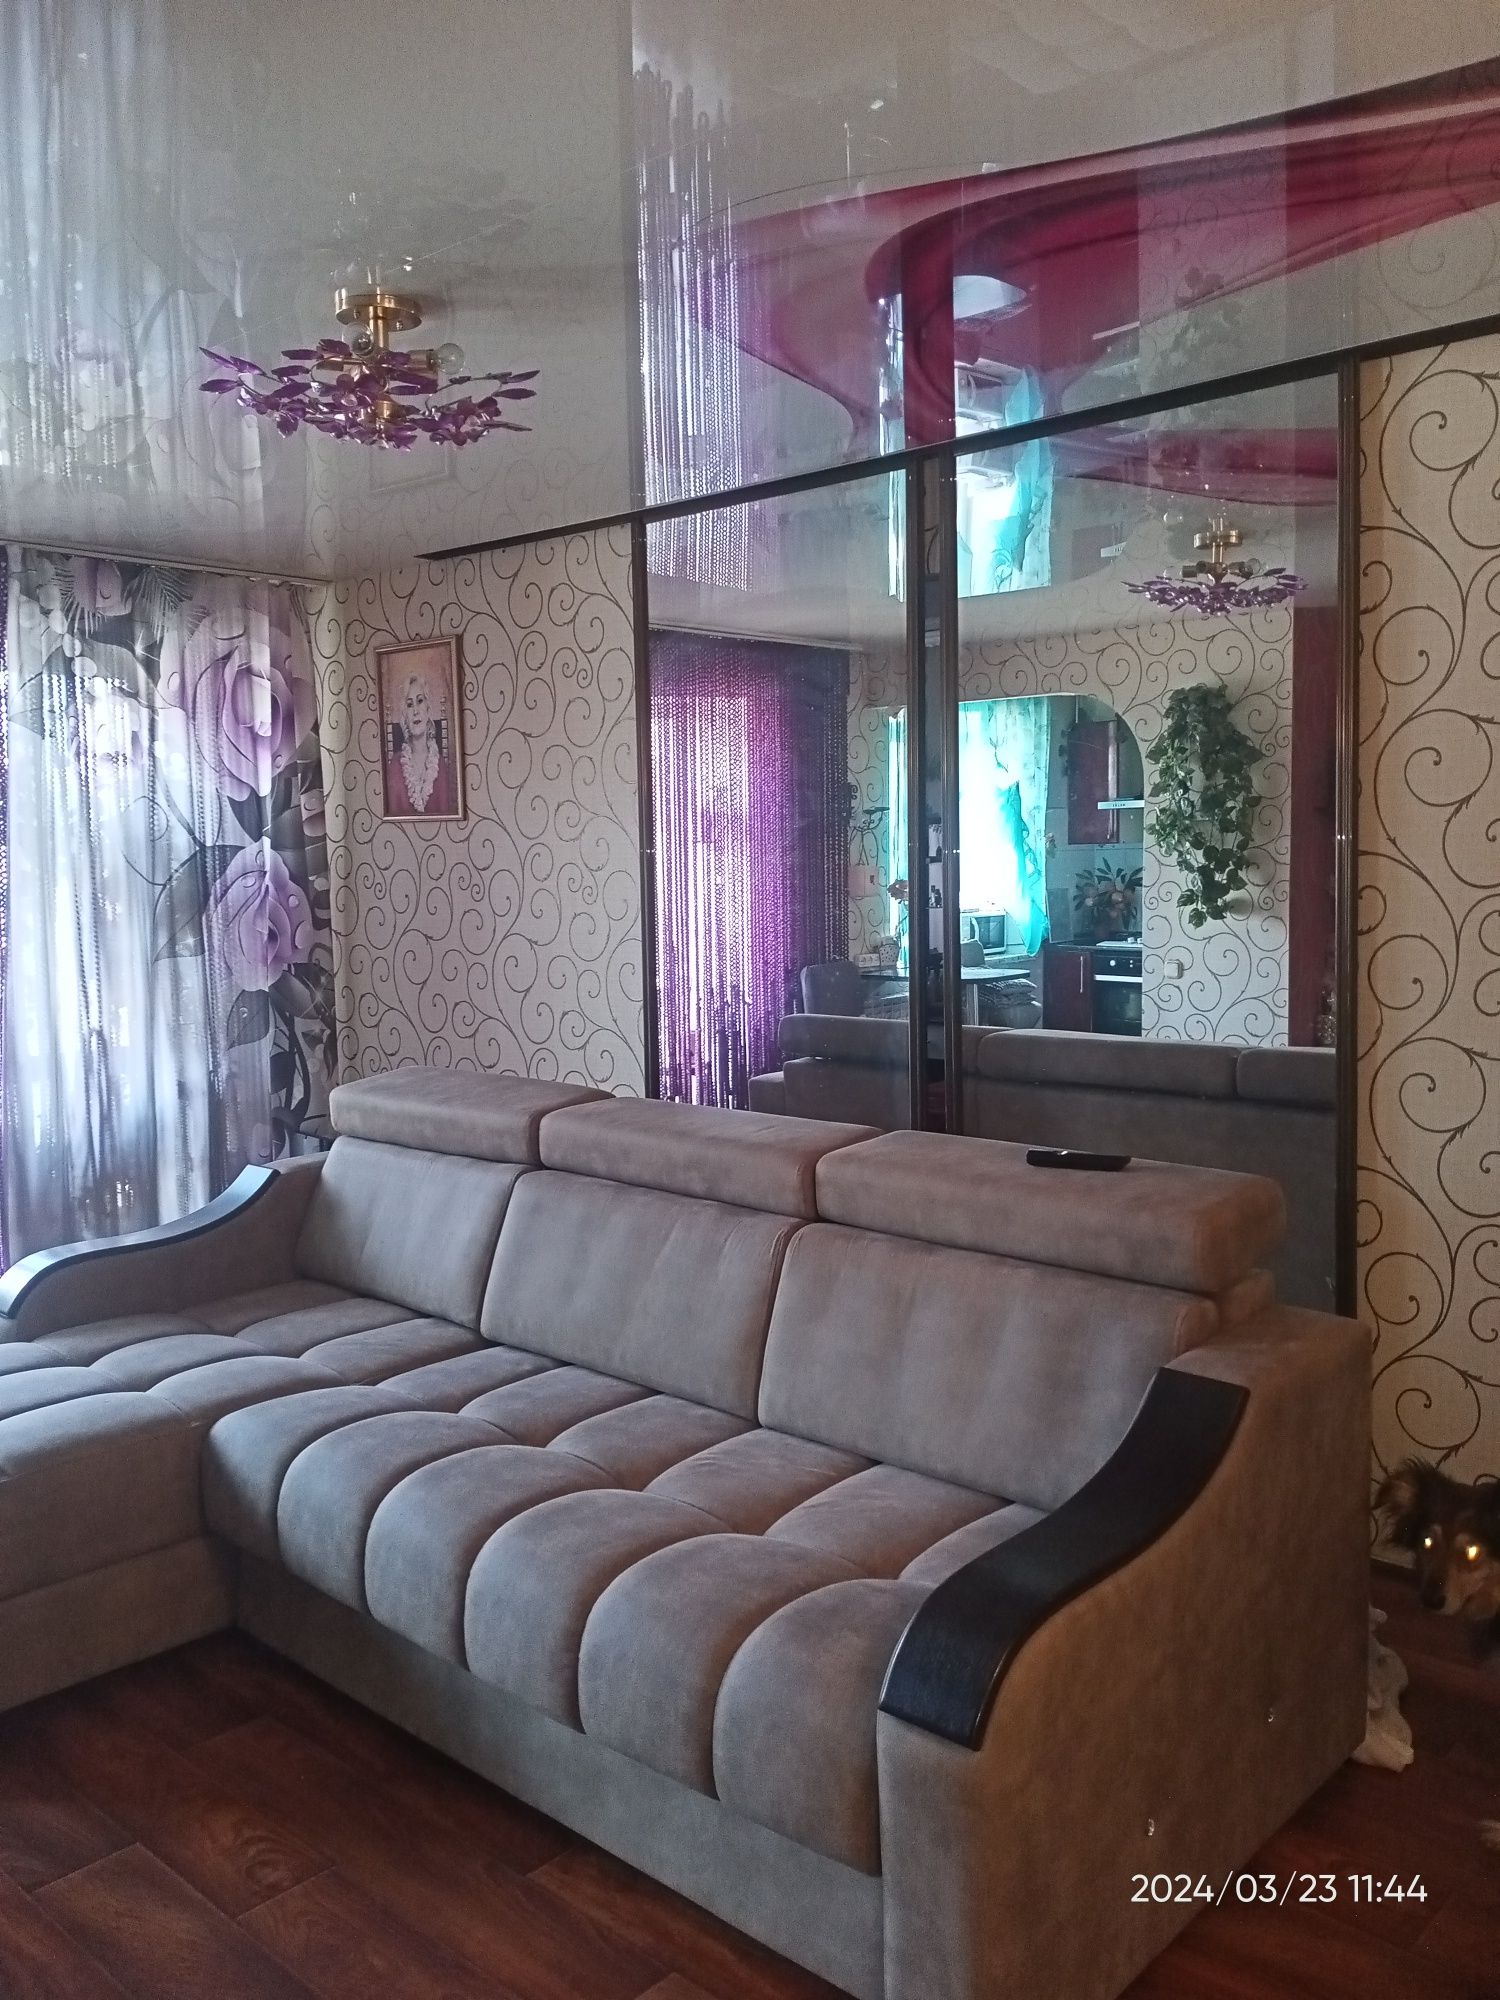 Продам квартиру в центре города в районе  Аян Пассаж